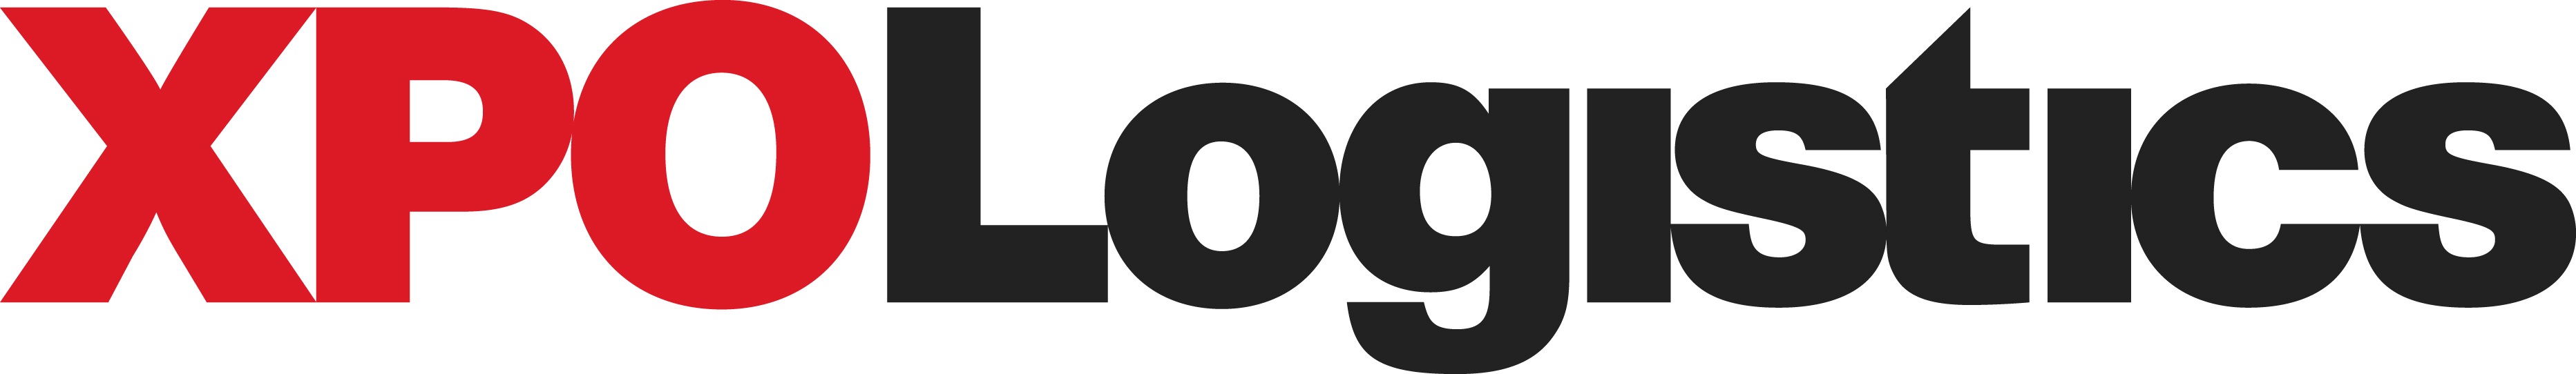 xpo_logo2020.jpg